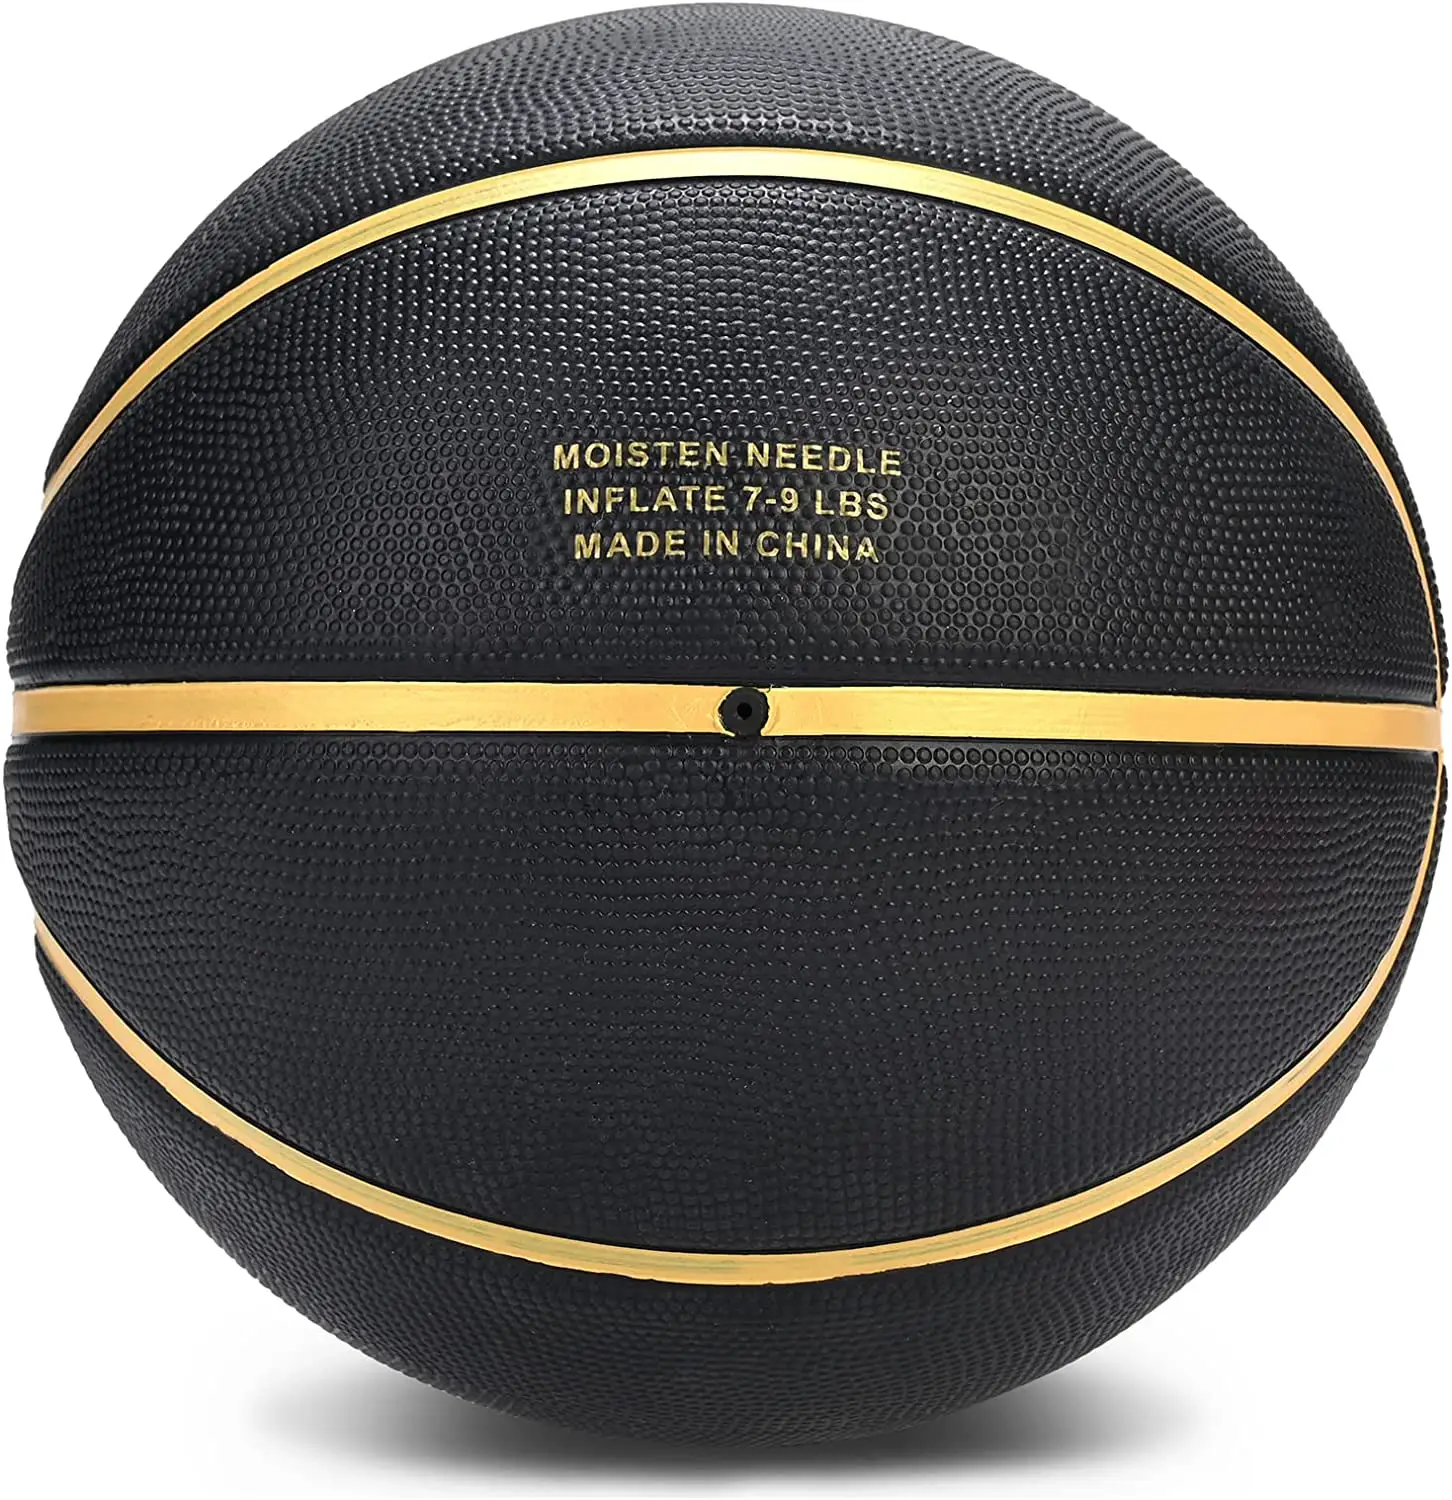 Pelota de baloncesto impresa personalizada, canasta de goma, tamaño oficial 7, con logotipo personalizado